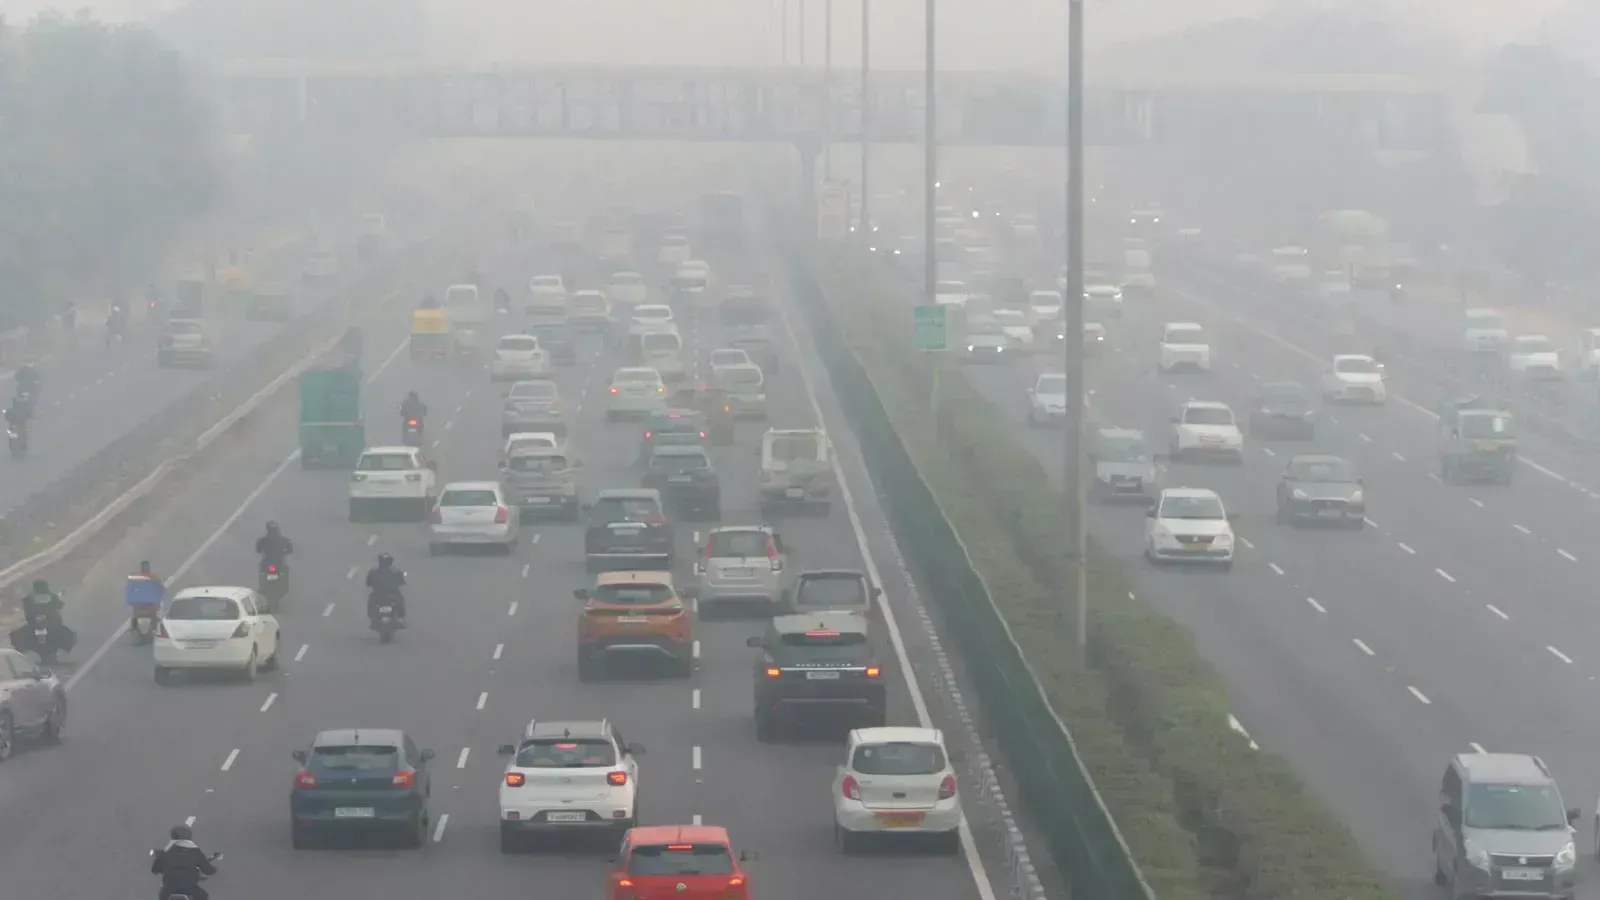 એશિયામાં શા માટે છે દુનિયાના સૌથી પ્રદૂષિત શહેરો, જાણો શું છે તેની પાછળની અંદરની કારણ...!